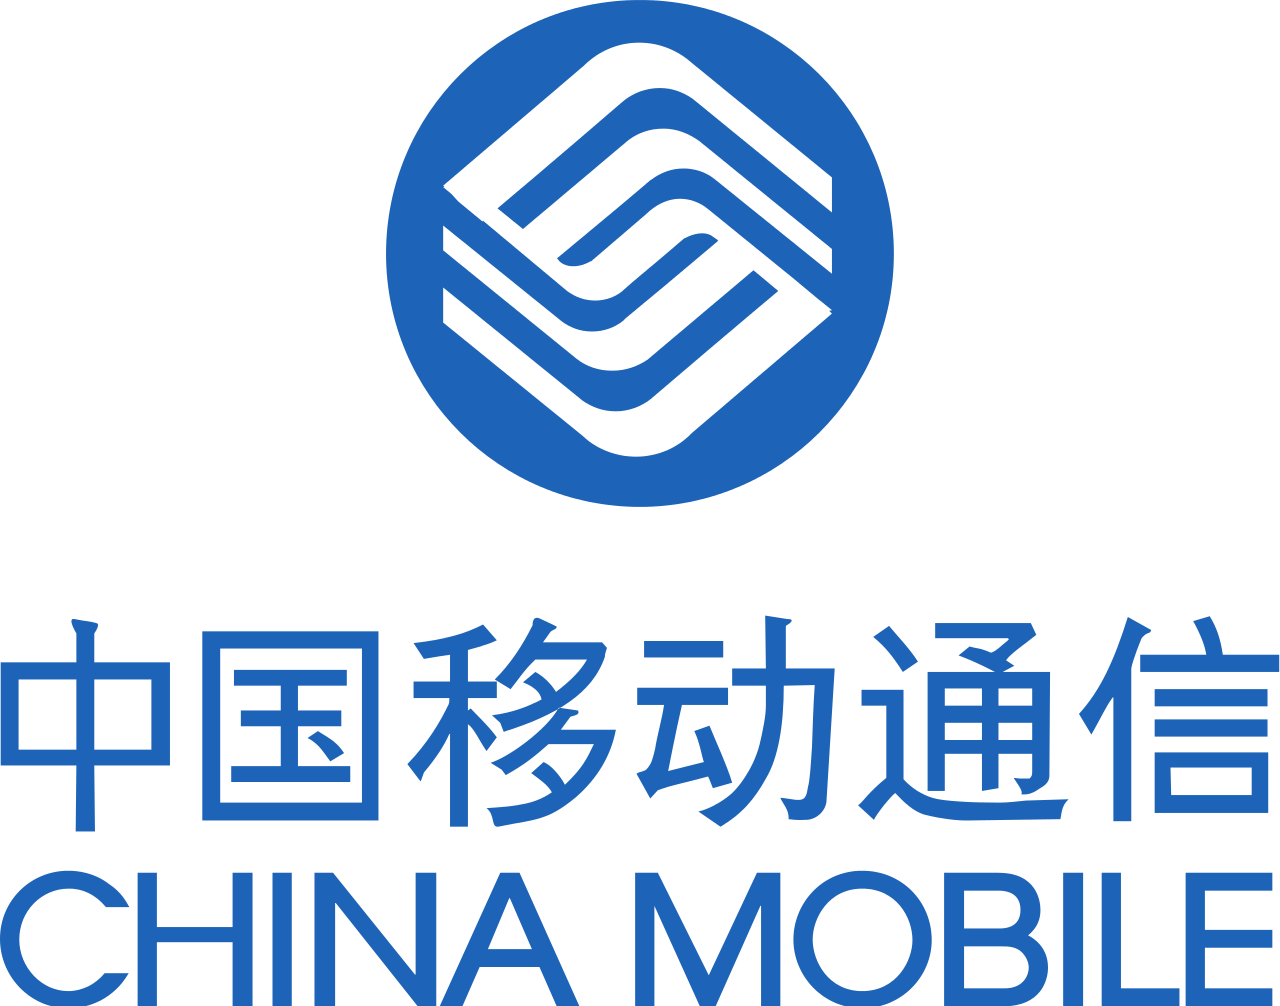 berkas china mobile logo bahasa indonesia #8444